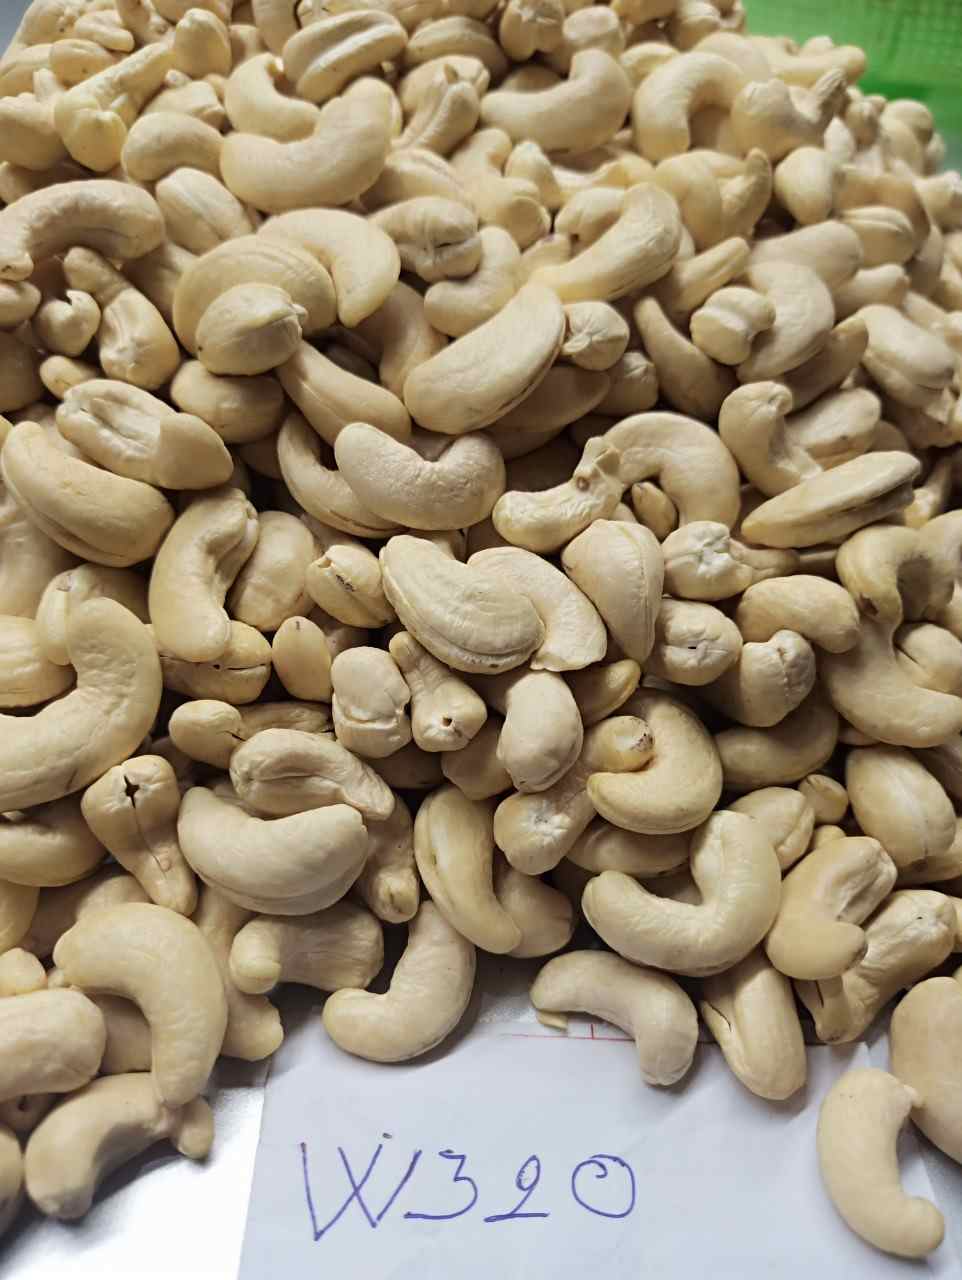 w320-vietnam-cashew-nut-3